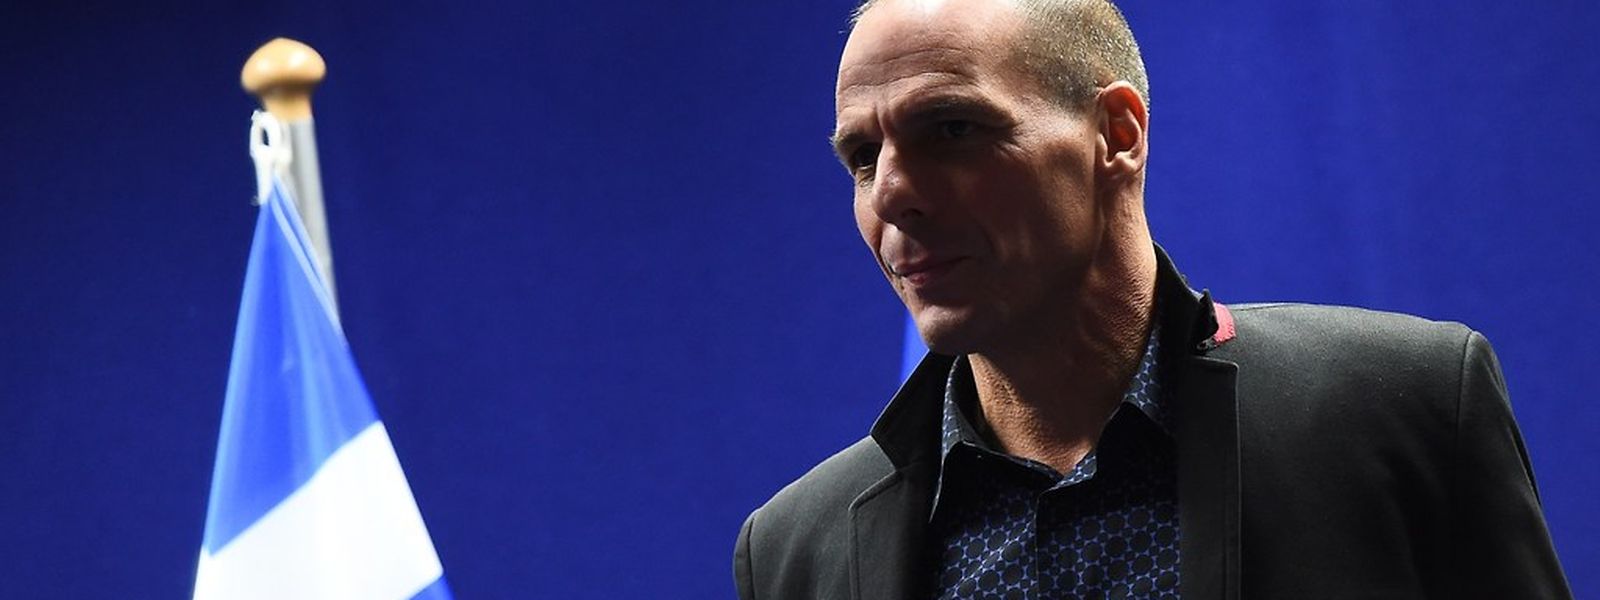 Der griechische Finanzminister Yanis Varoufakis zeigte sich am Donnerstag zuversichtlich, dass eine Lösung gefunden werden kann.